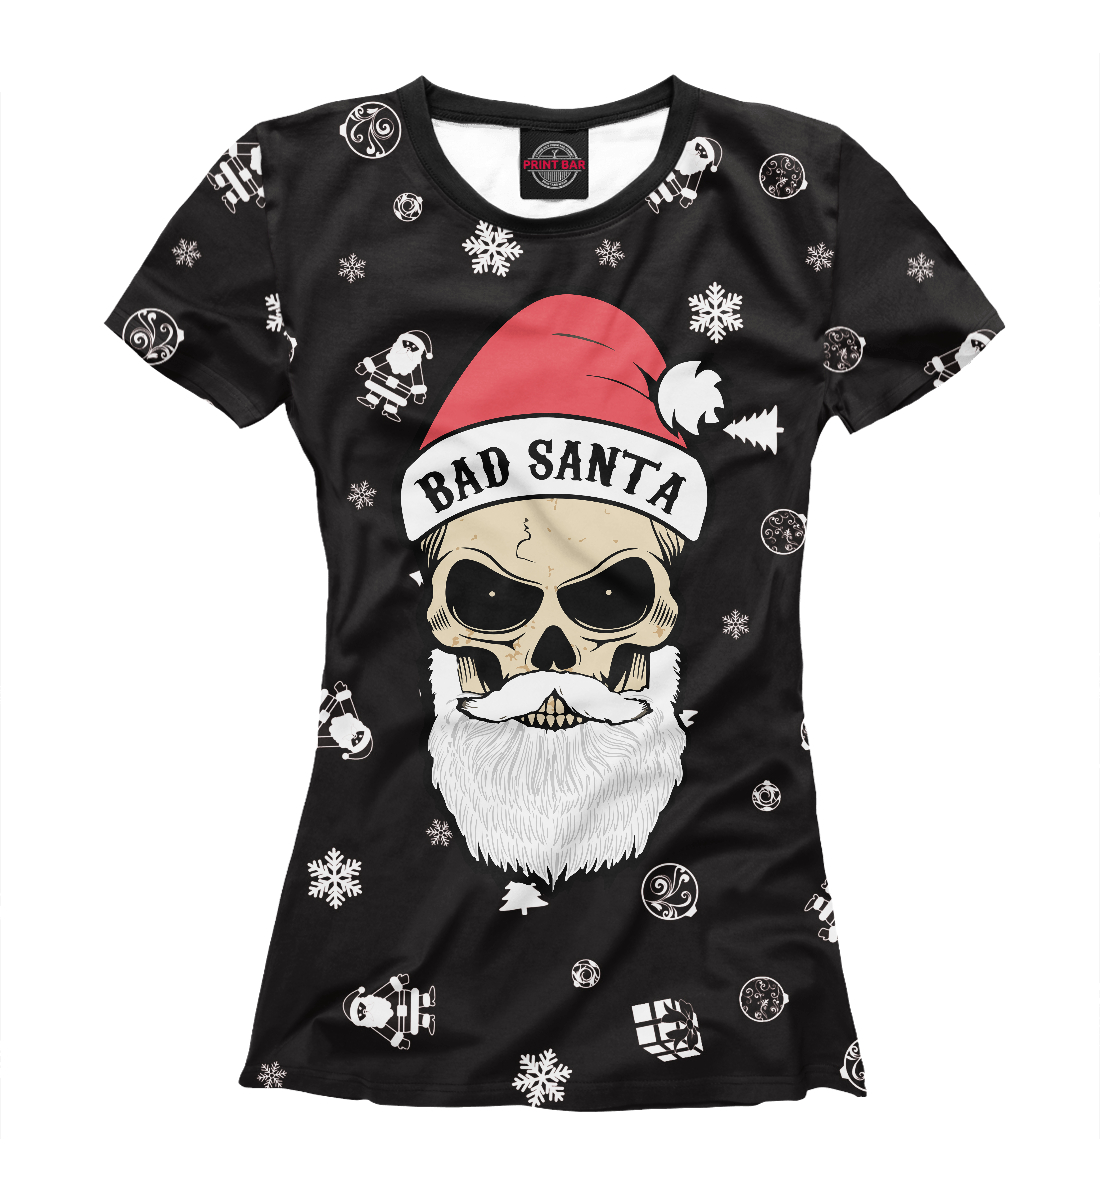 Футболка Bad Santa для женщин, артикул: DMZ-898025-fut-1mp